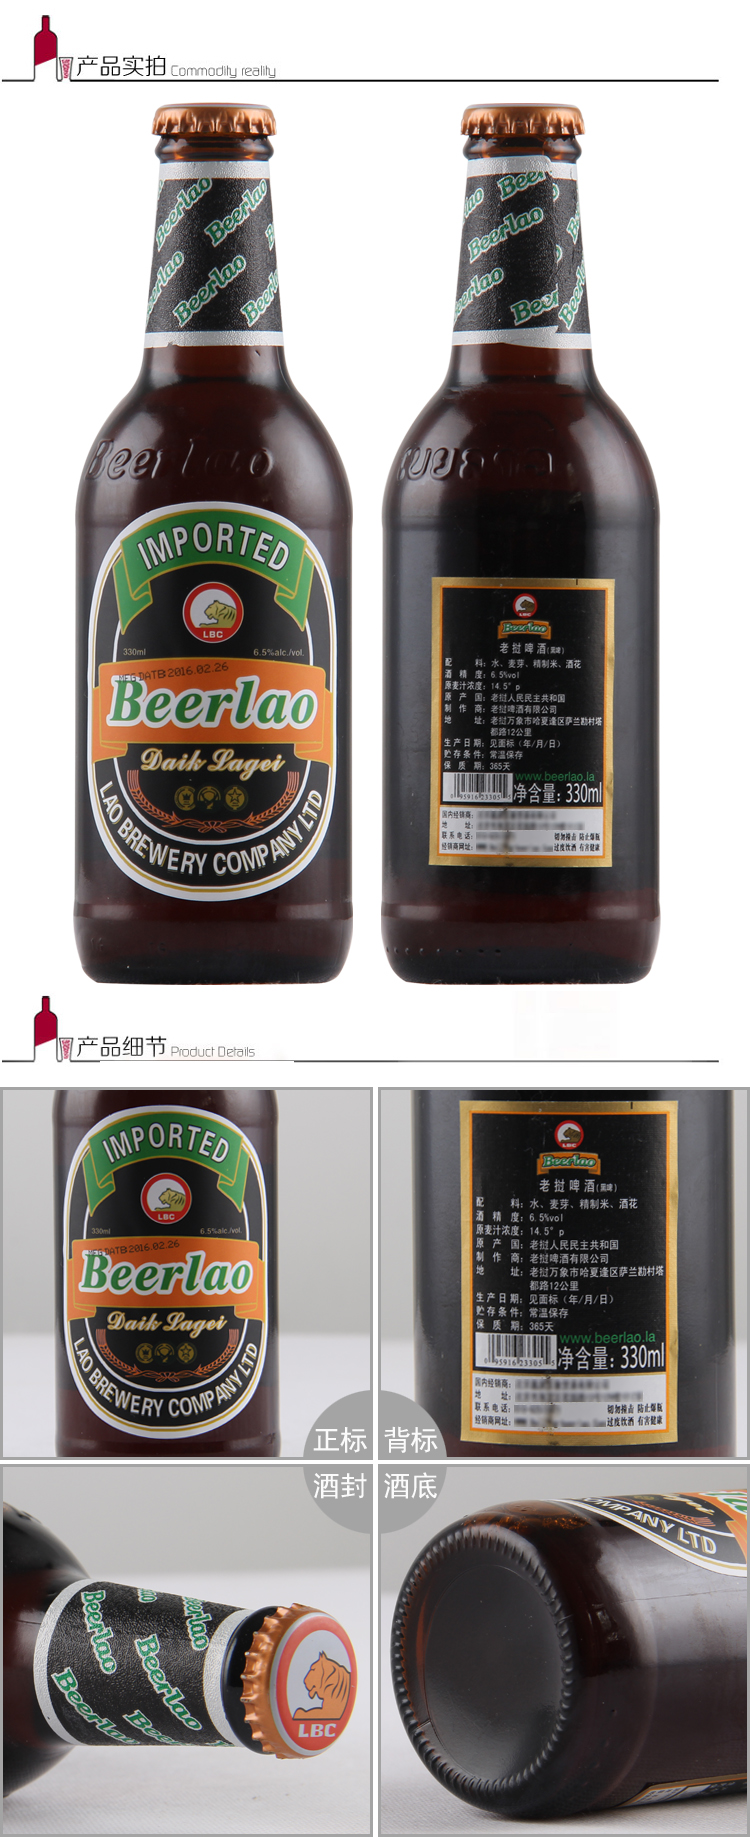 老挝(beerlao) 老挝啤酒 beerlao 瓶装 原装老挝进口啤酒 低度酒 黑啤